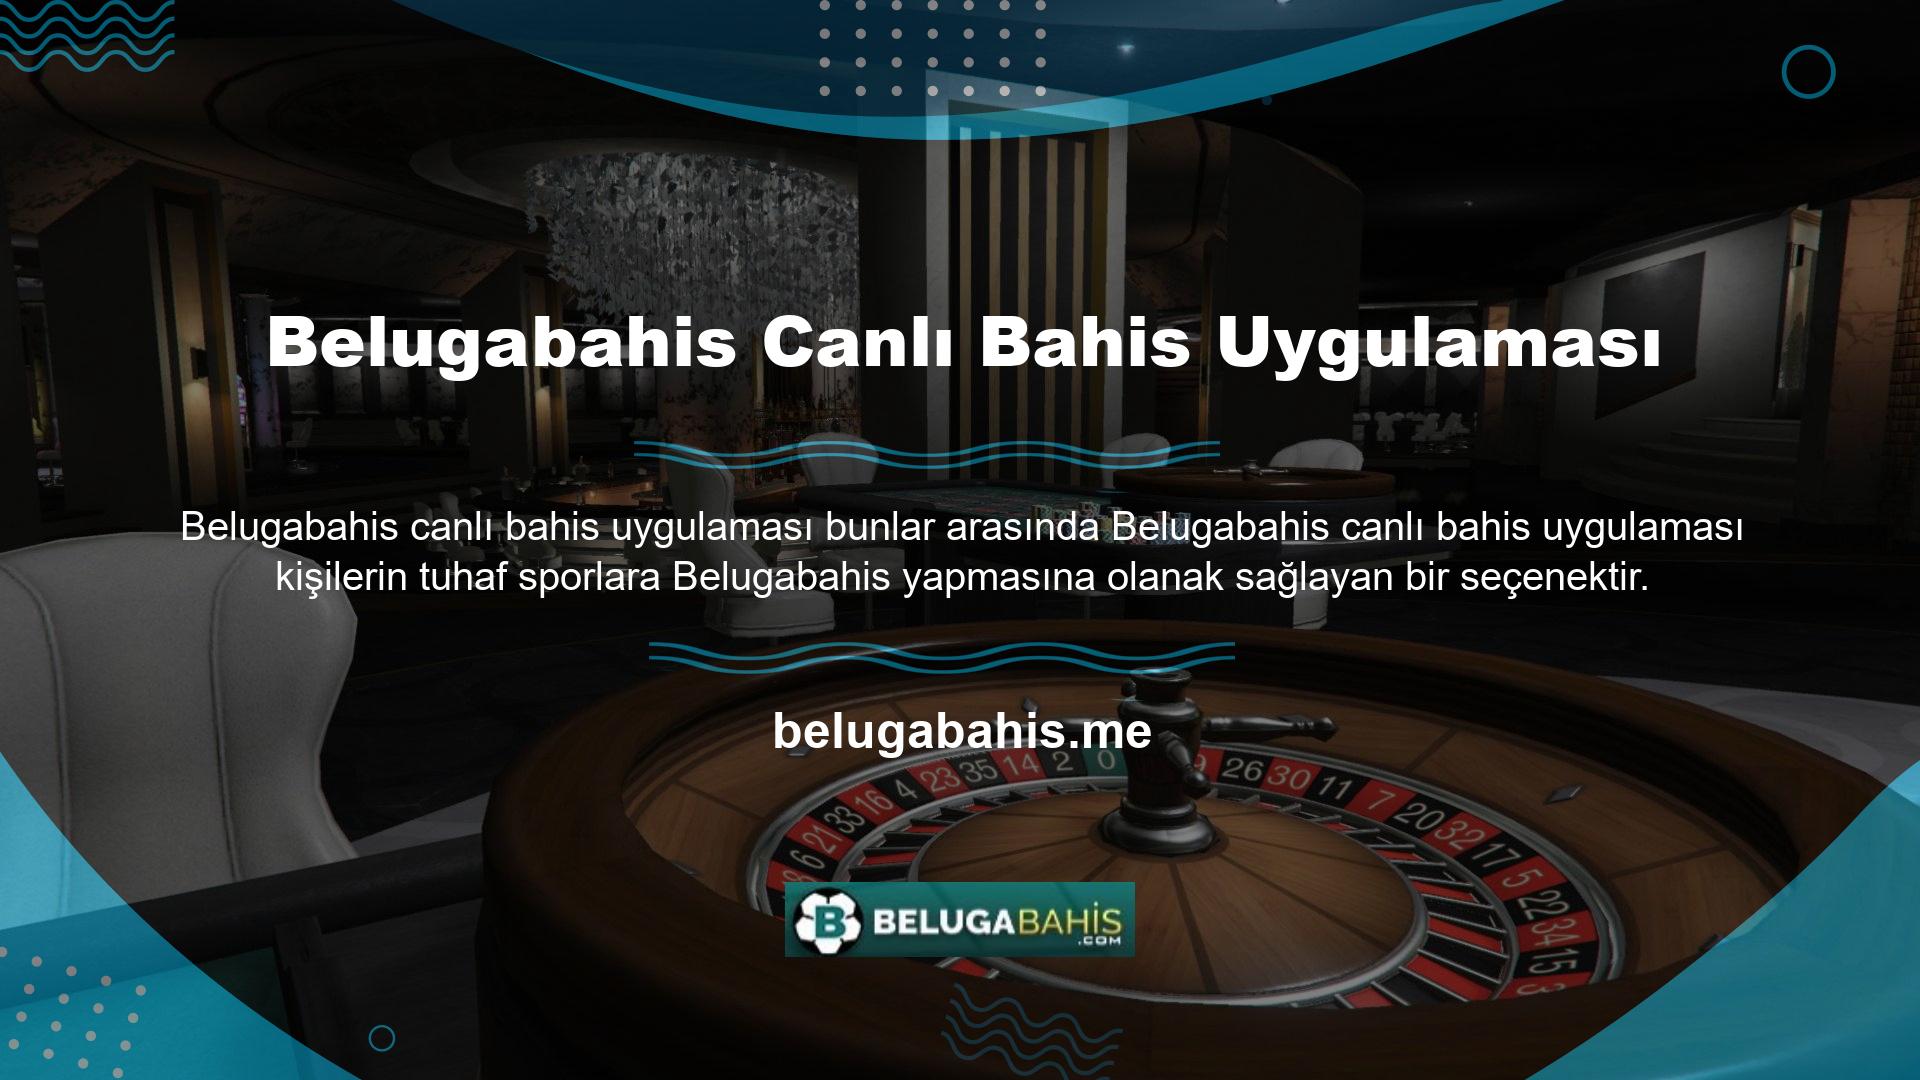 Uygulama spor branşına ait bir oyunun başında Belugabahis alternatifleri sunuyor